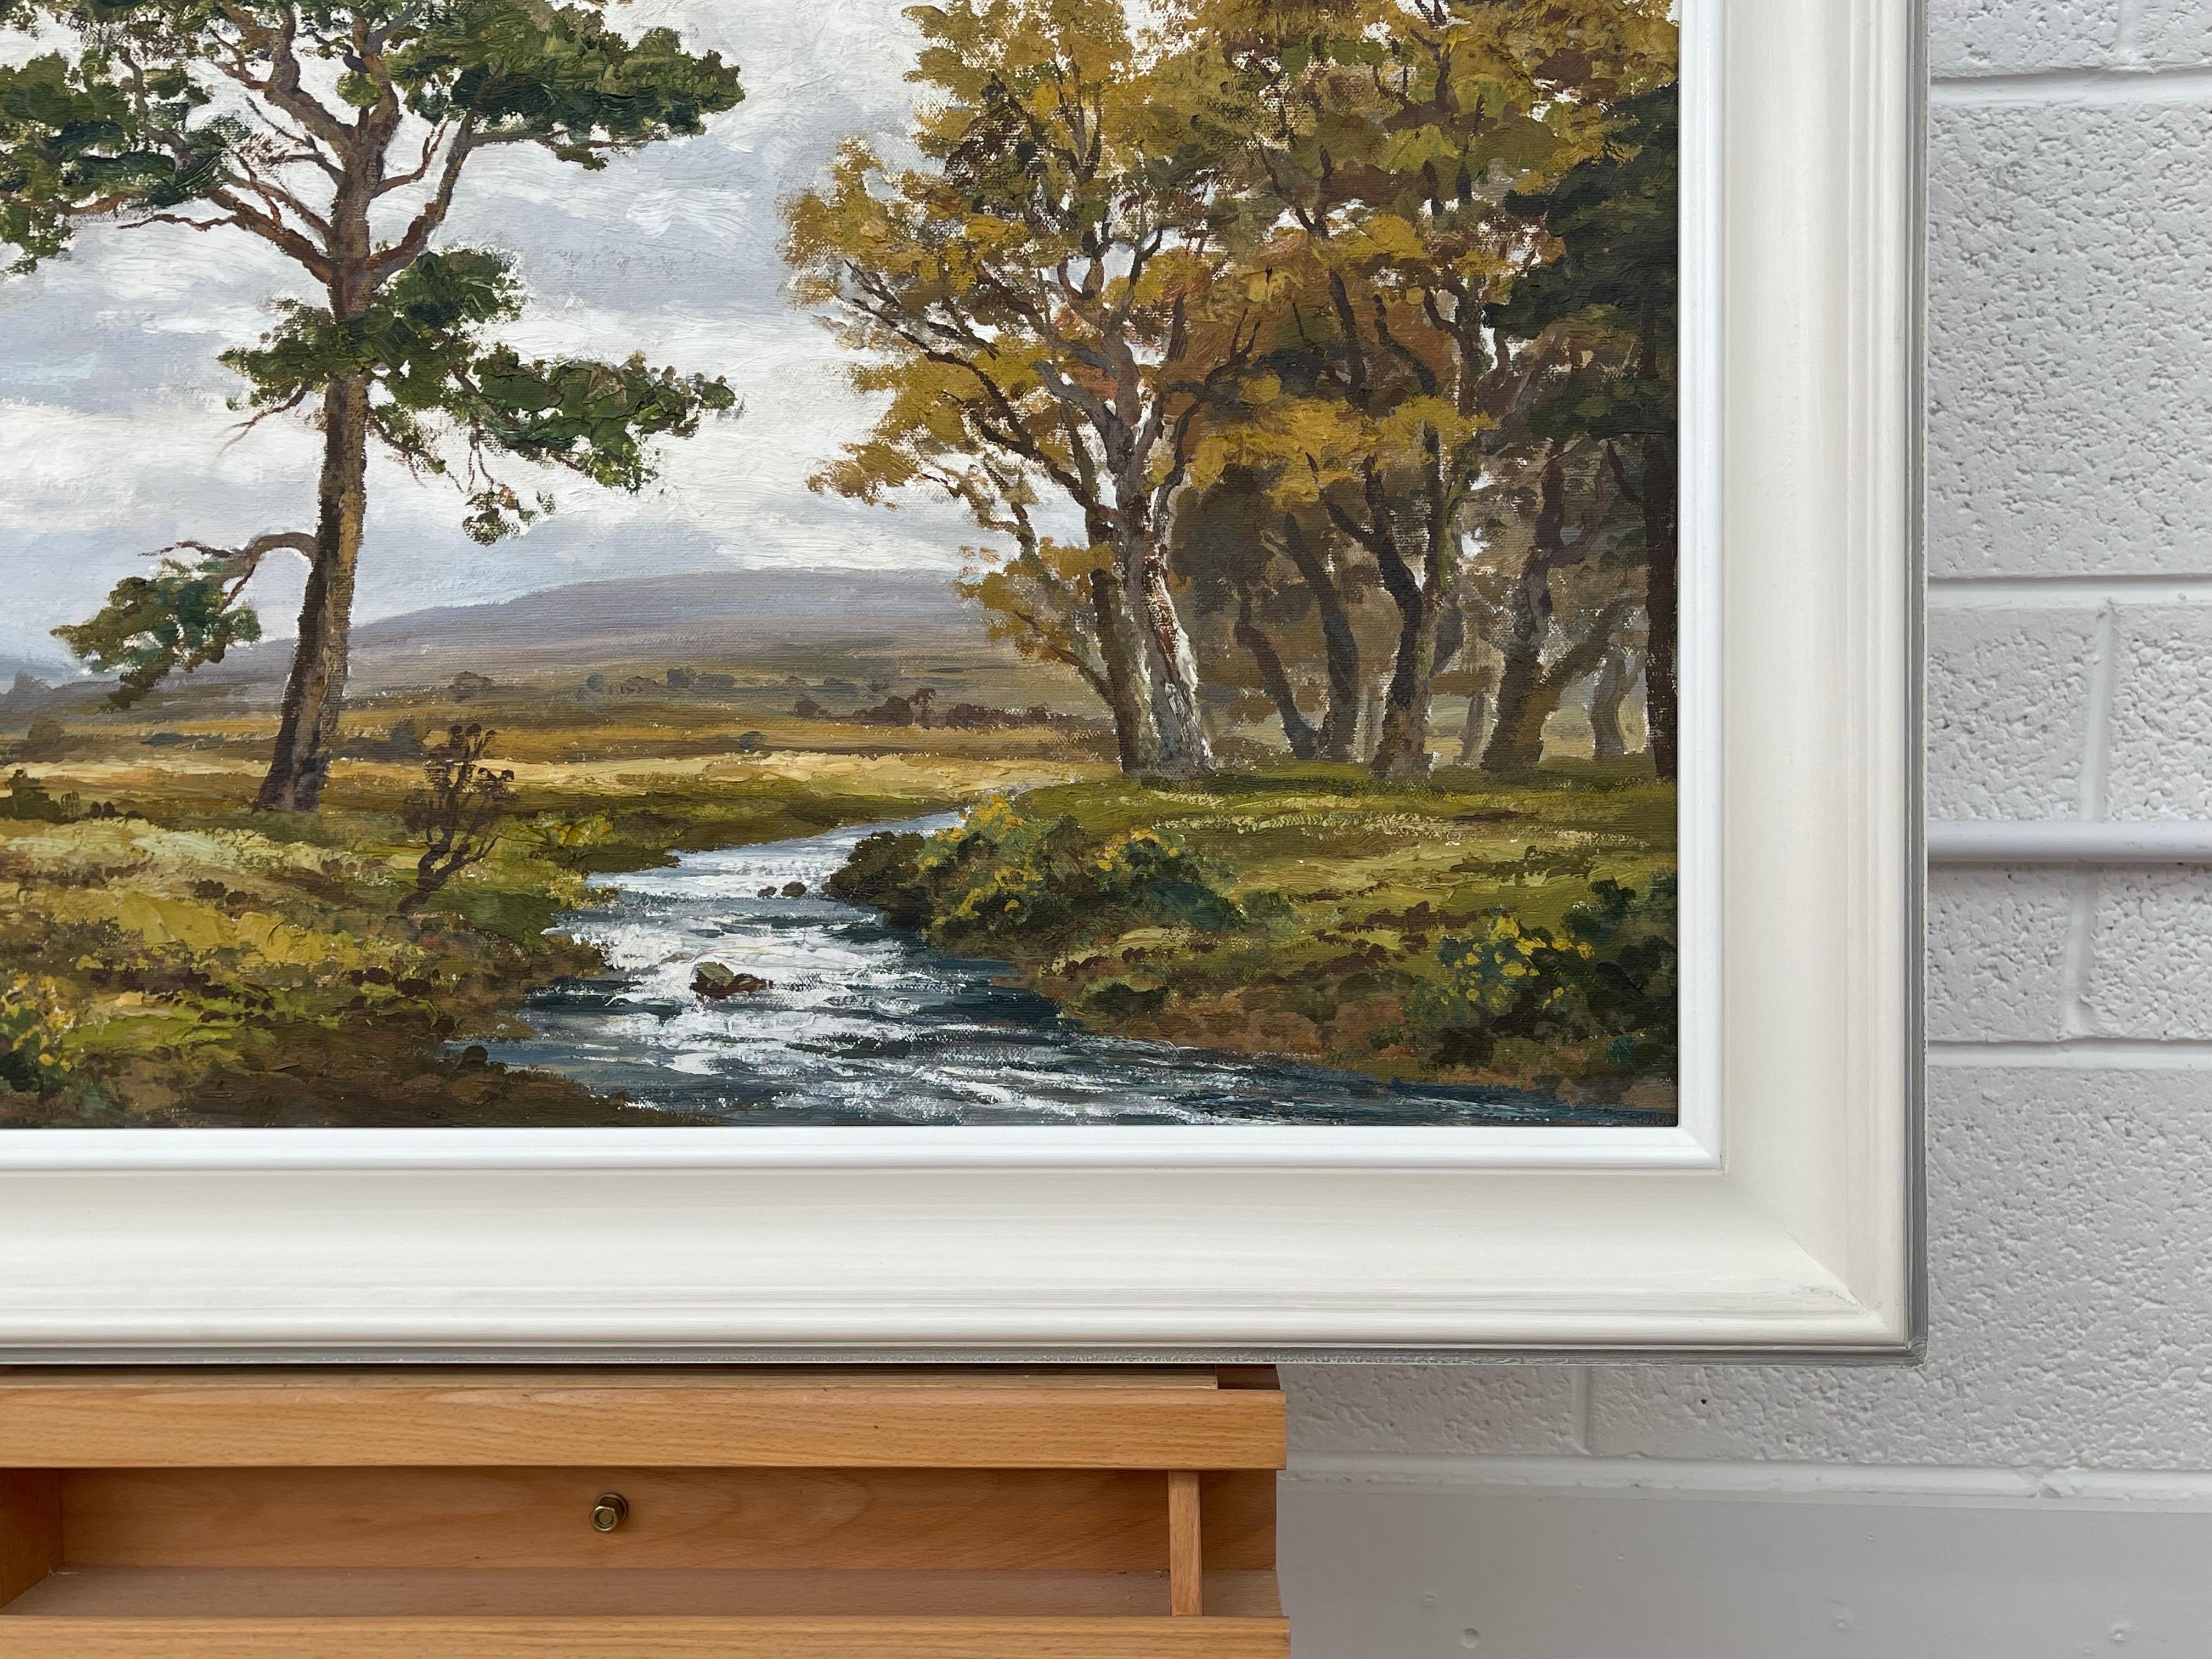 Original-Ölgemälde der Flusslandschaft von Glenfinnan in den schottischen Highlands von Robert Egginton, einem Künstler des 20. Jahrhunderts. 

Kunst misst 30 x 22 Zoll 
Rahmen misst 36 x 28 Zoll 

Präsentiert in hochwertigem, handgefertigtem,